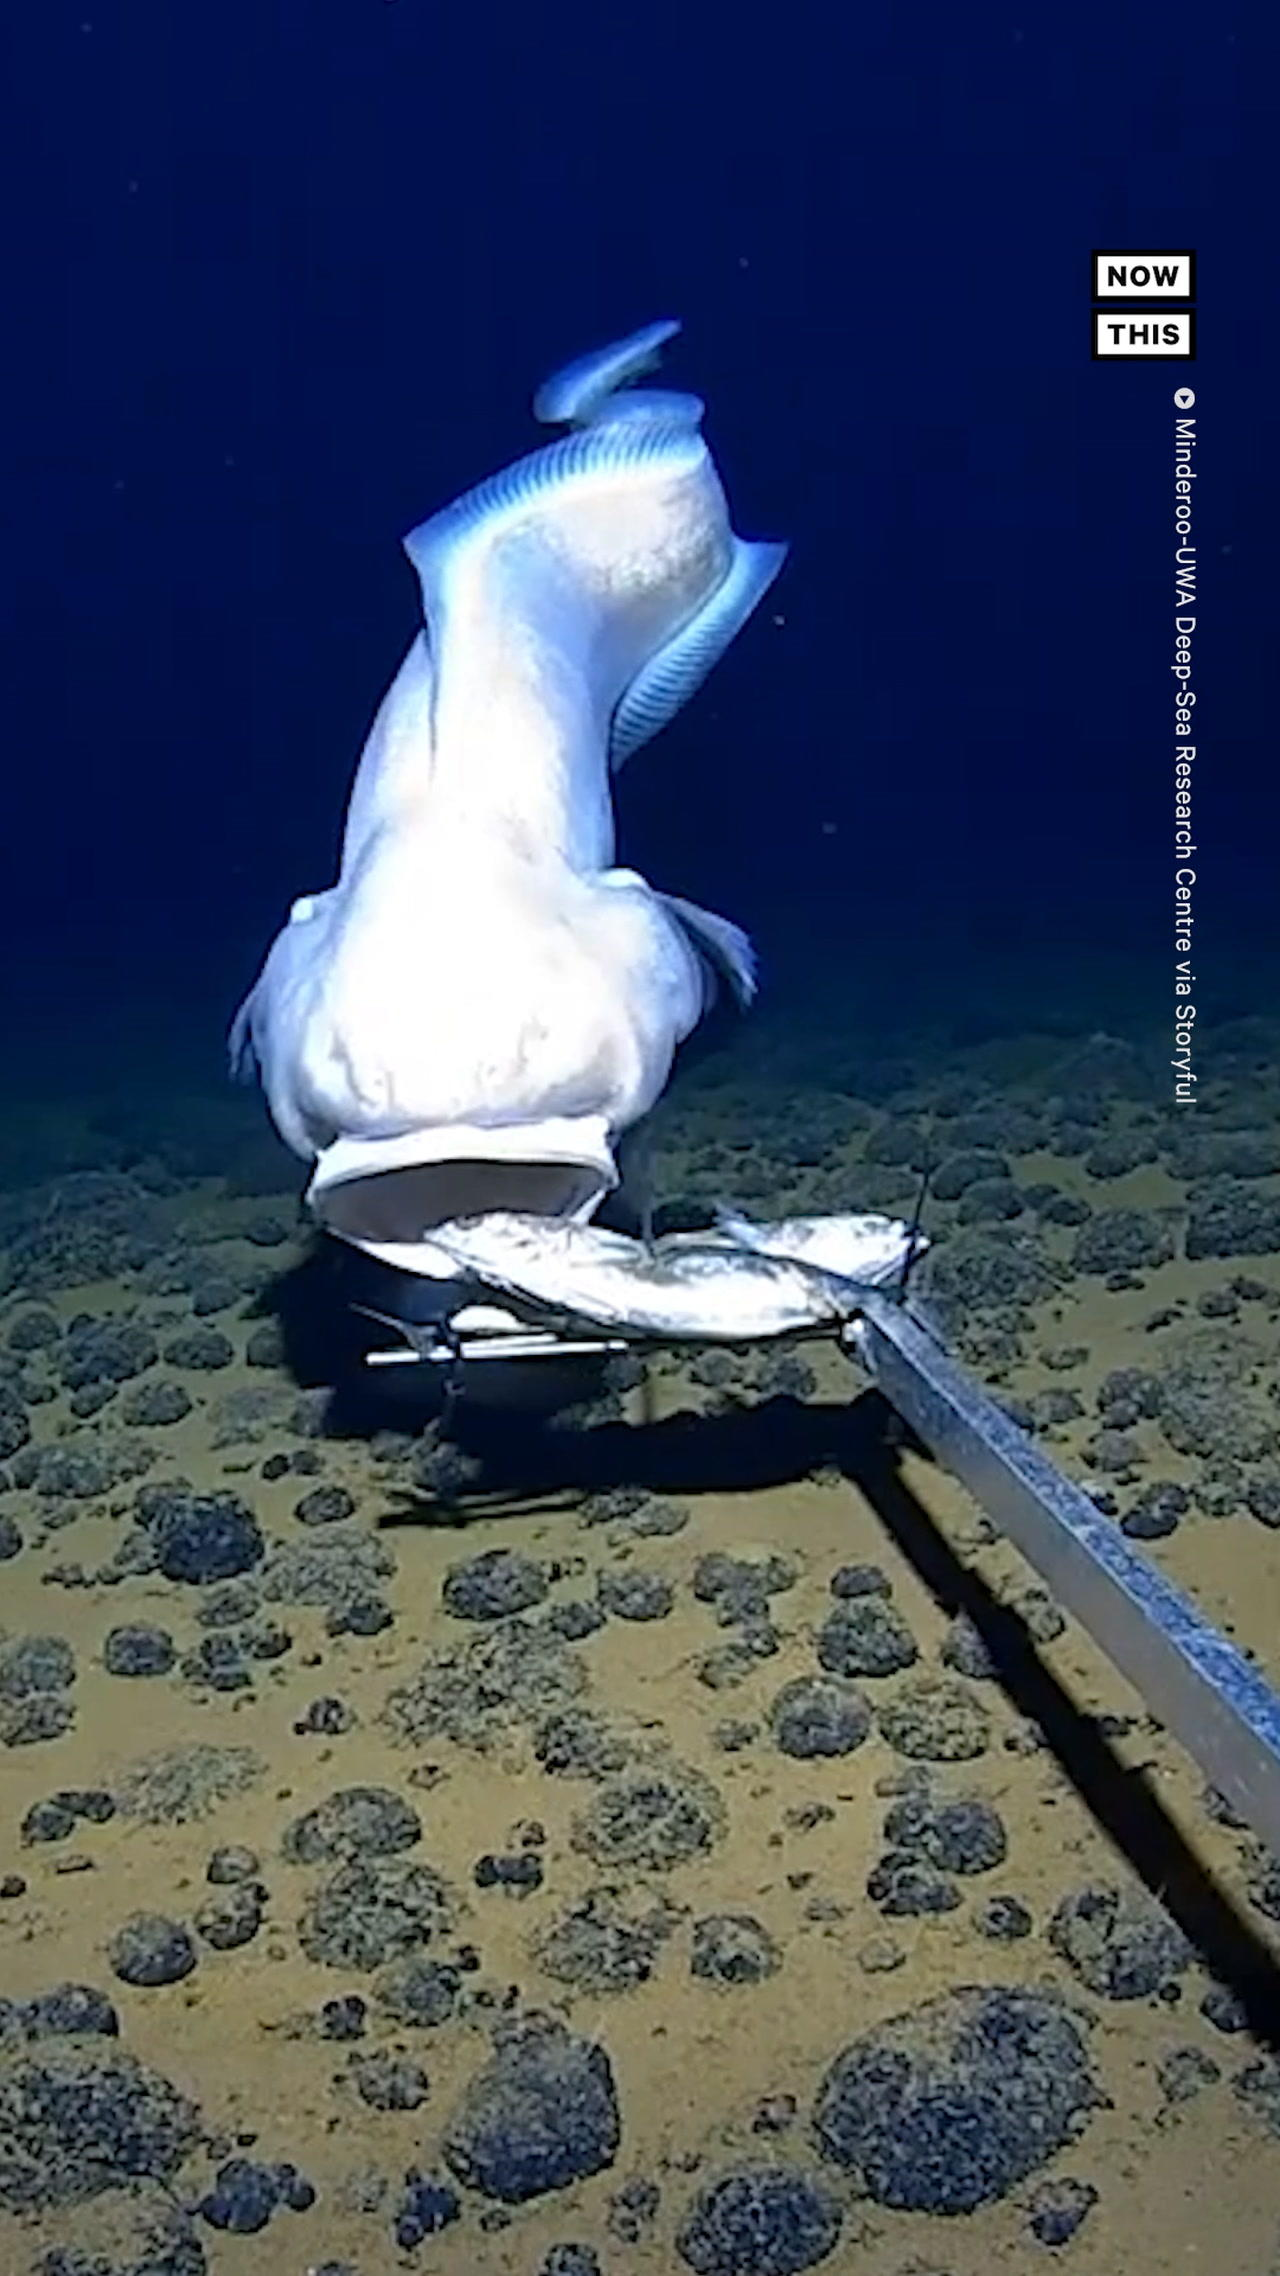 Researchers Get Footage of Unusual Fish 6,100 Meters Below Surface